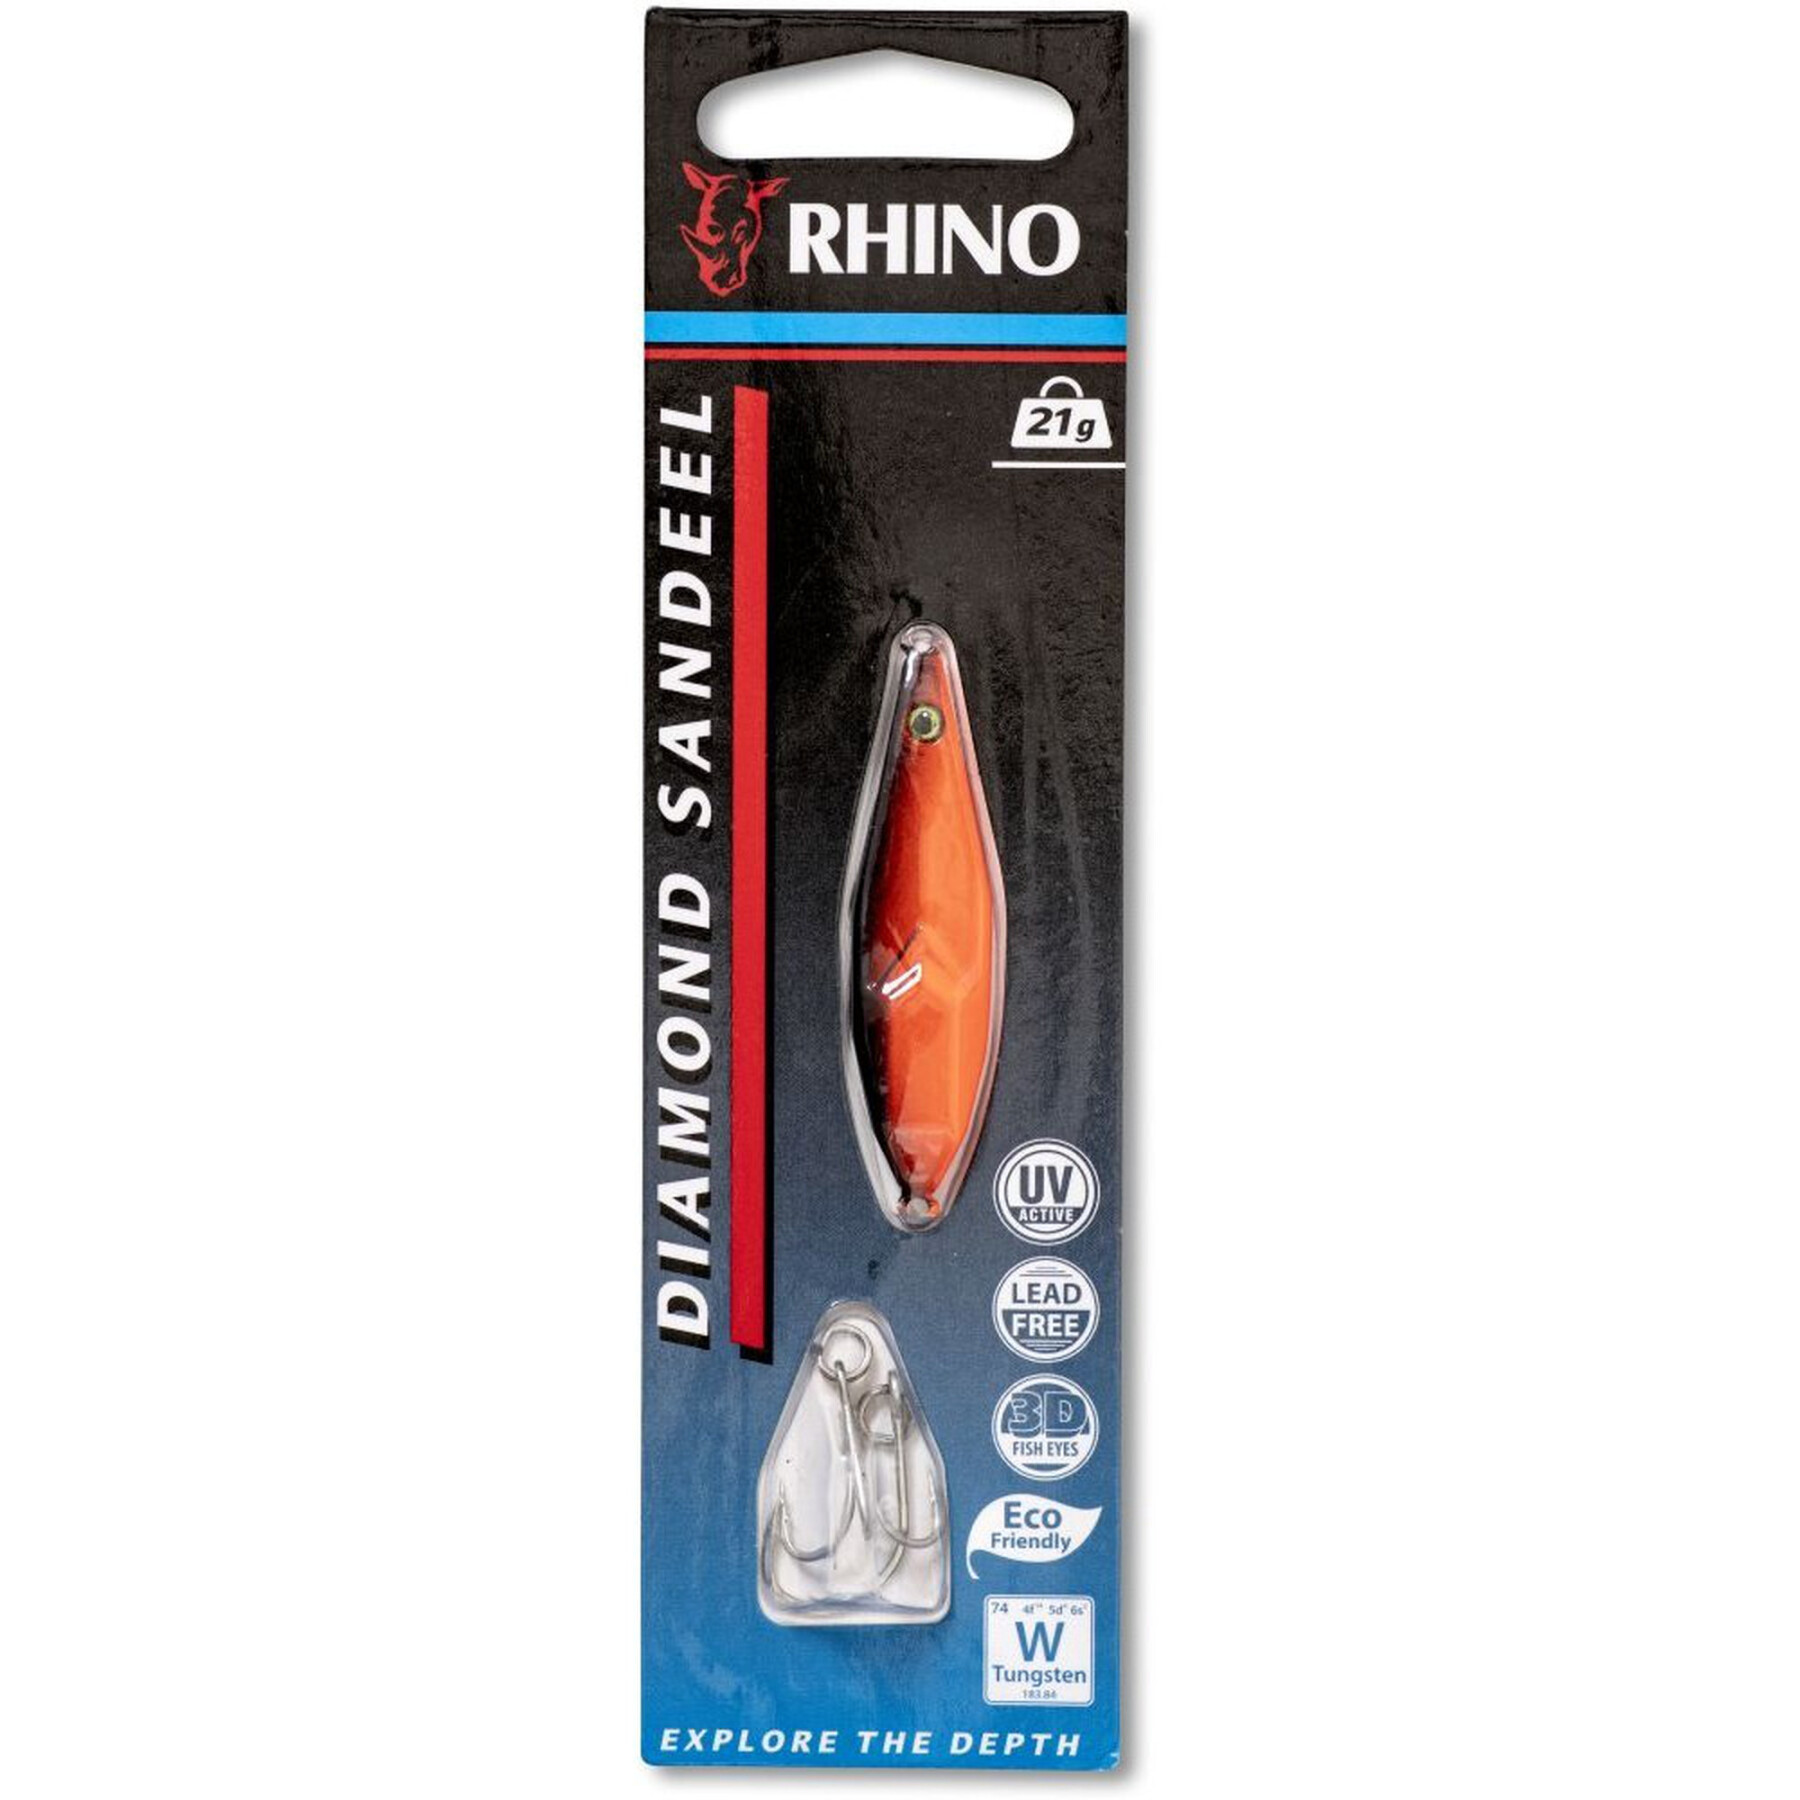 Przynęta Rhino Diamond Sandeel – 21g